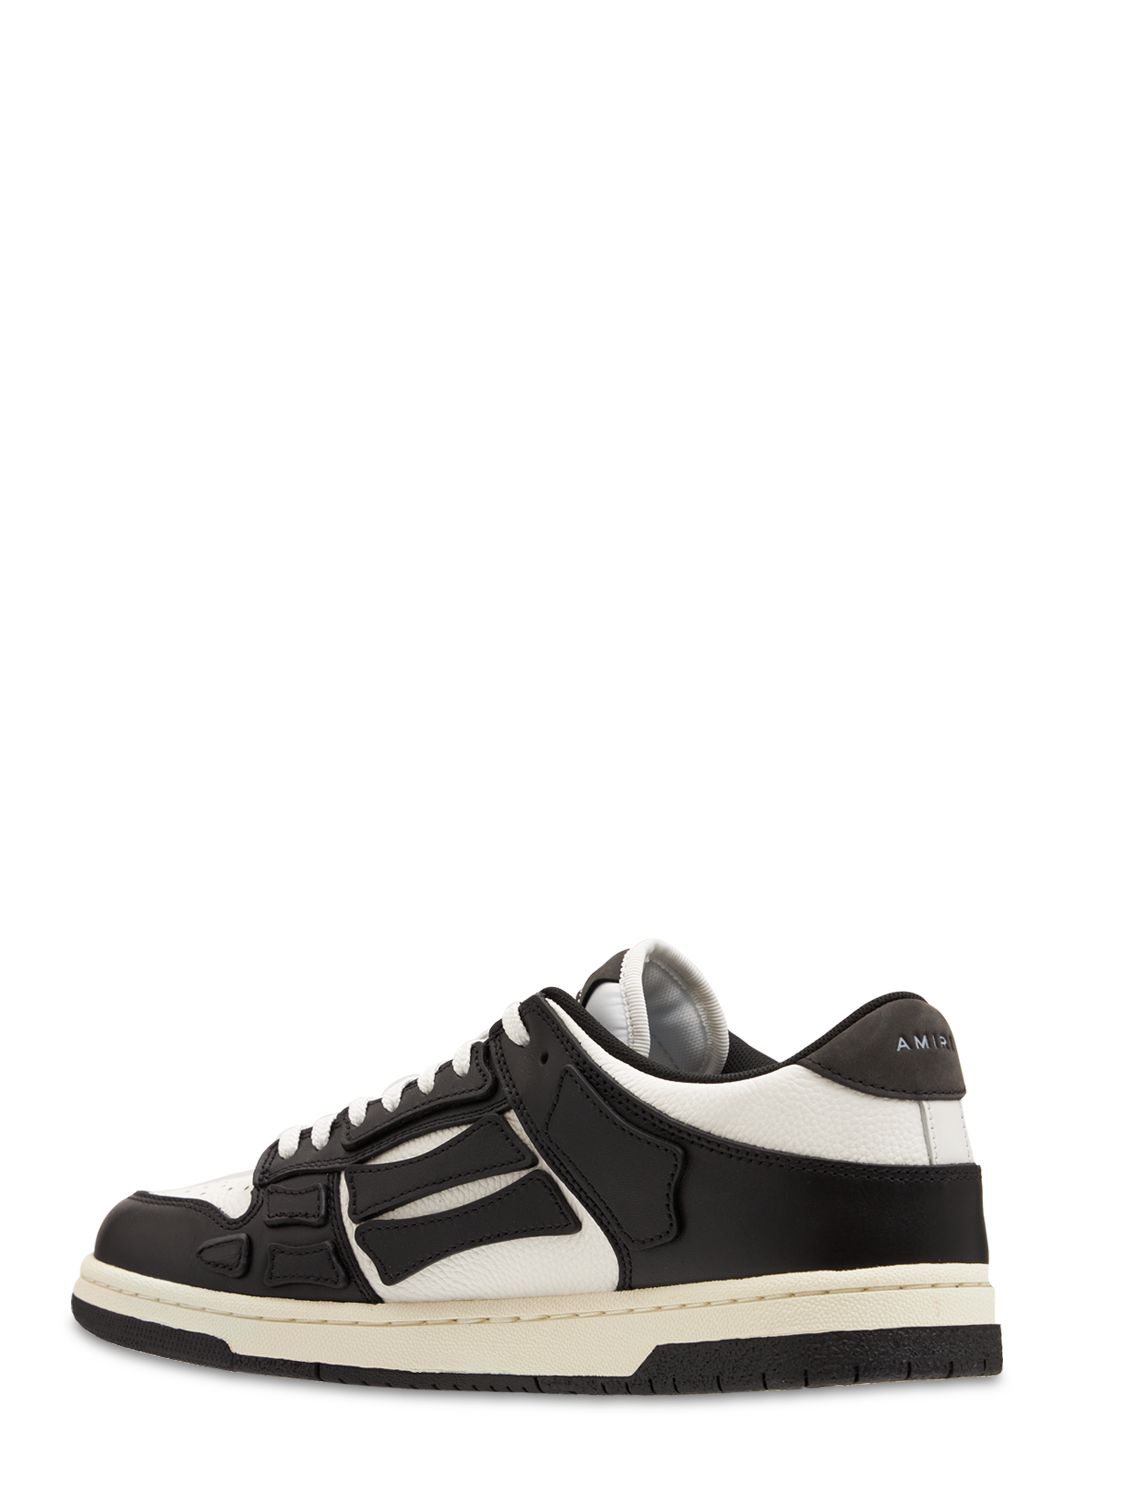 Shop Amiri Lvr Exclusive Skel-top Leather Sneakers In Black,white